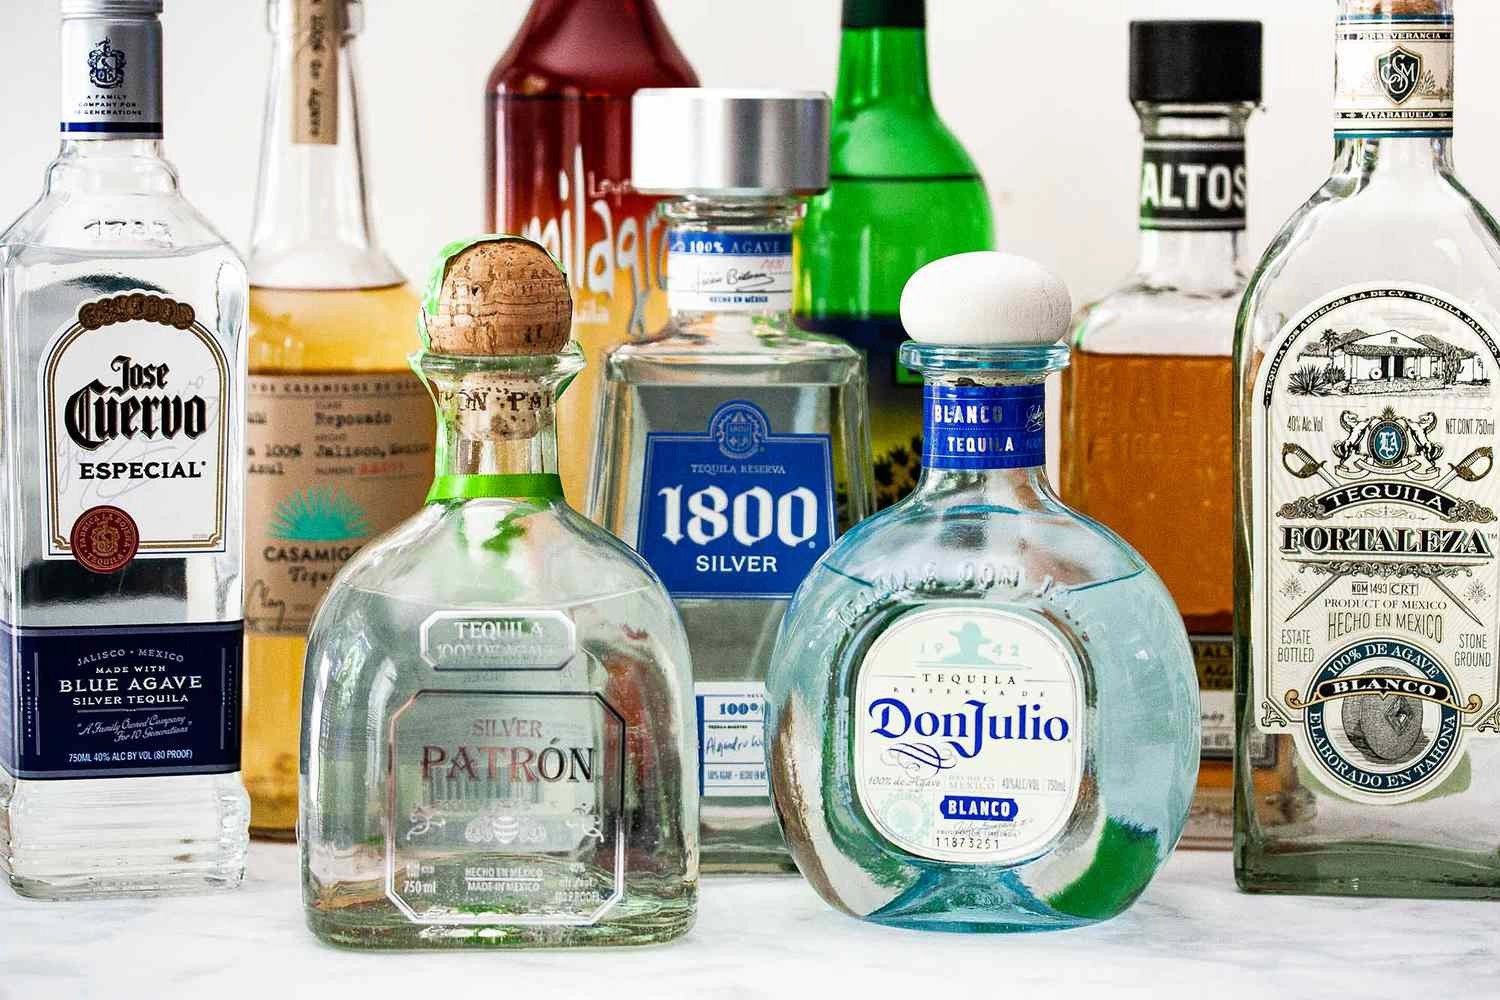 Top 10 thương hiệu rượu Tequila được bán chạy nhất hiện nay